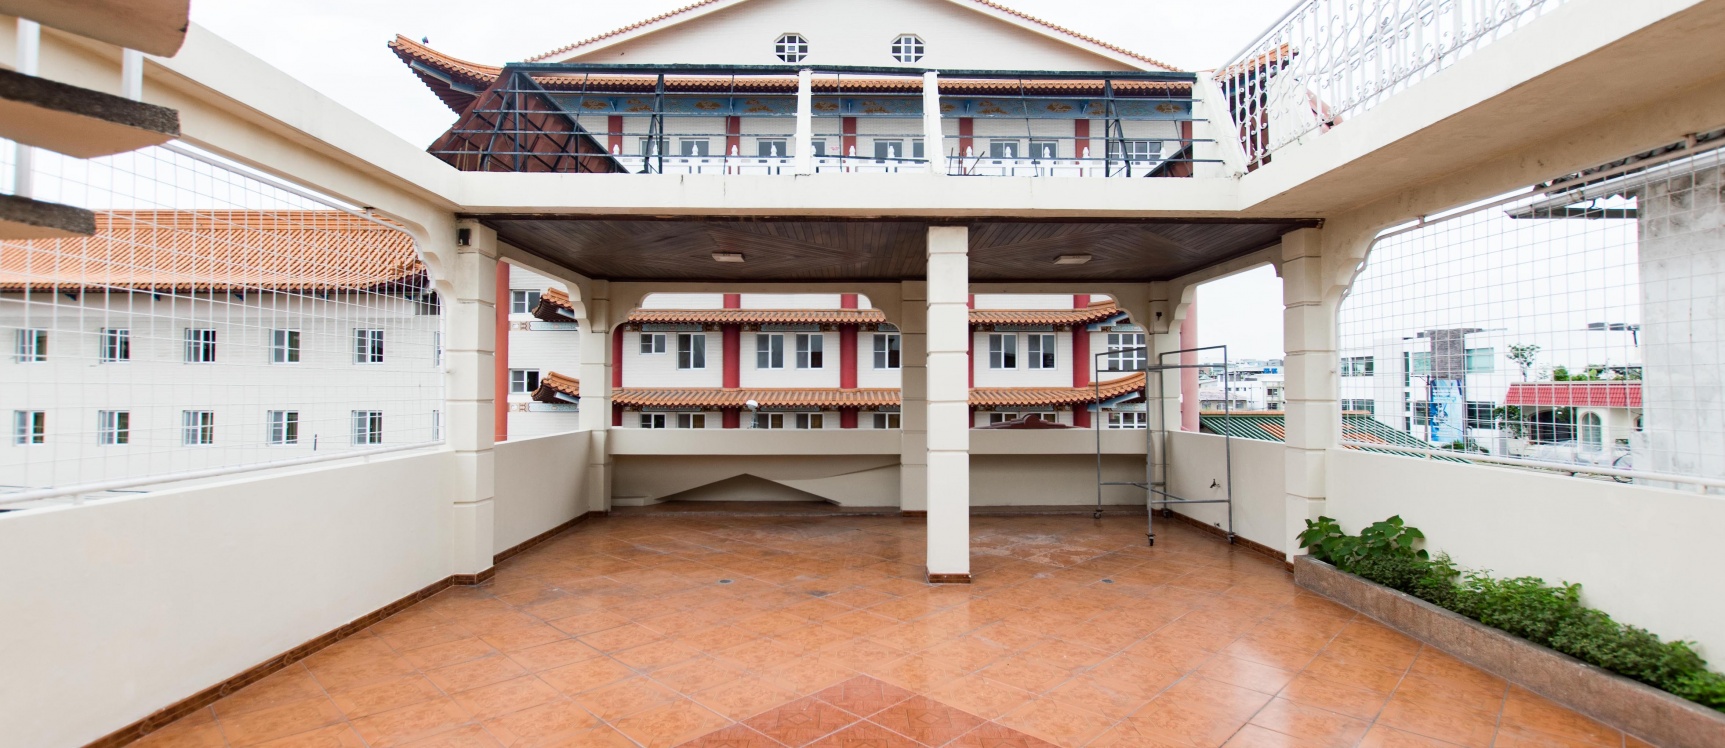 GeoBienes - Casa en alquiler ubicada en La Garzota, Norte de Guayaquil - Plusvalia Guayaquil Casas de venta y alquiler Inmobiliaria Ecuador